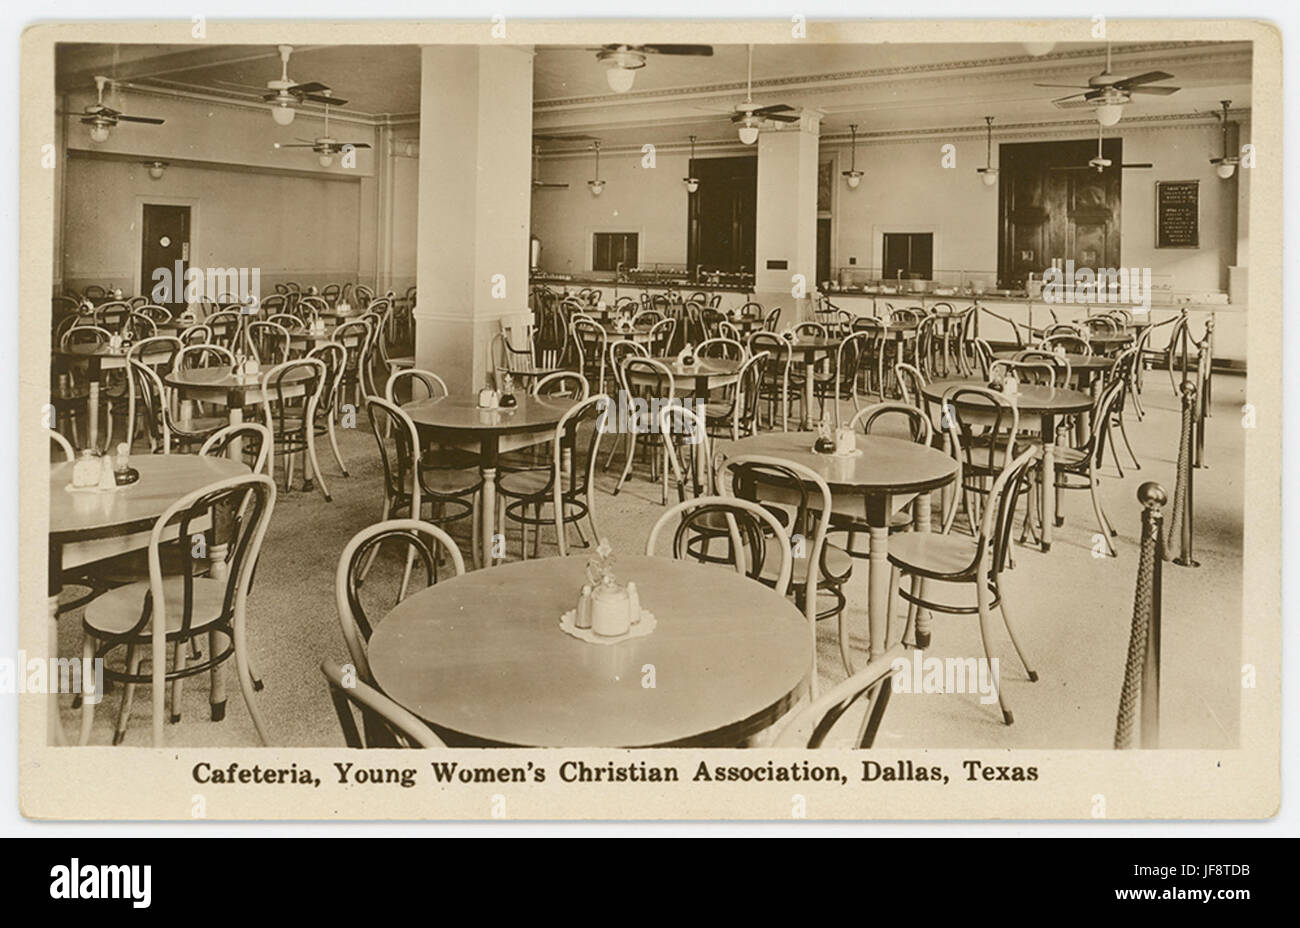 Cafeteria, Young Women's Christian Association, Dallas, Texas 33321669340 o Stock Photo